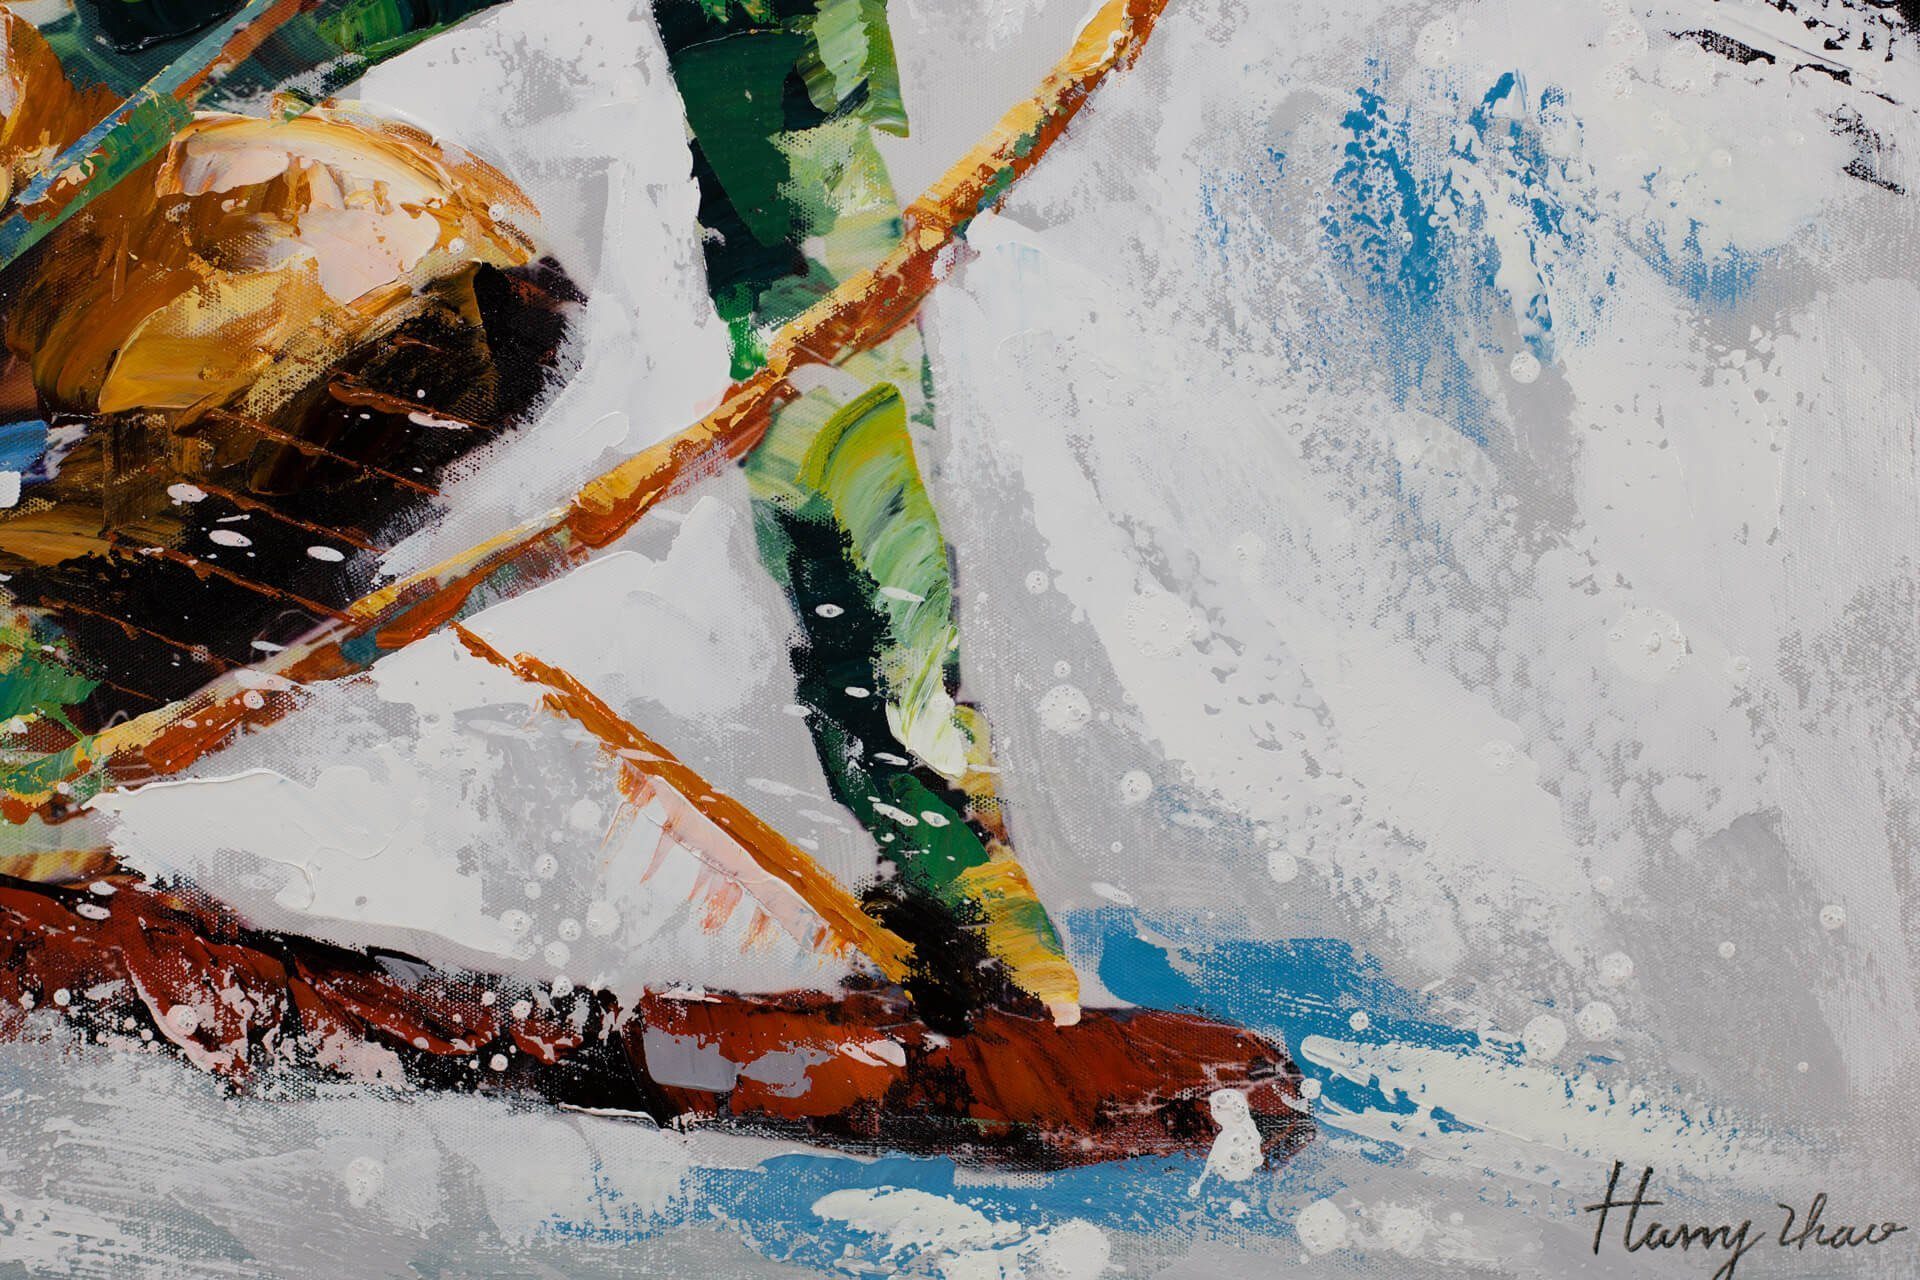 KUNSTLOFT Gemälde Ride in cm, 90x60 Leinwandbild 100% HANDGEMALT Snow the Wandbild Wohnzimmer